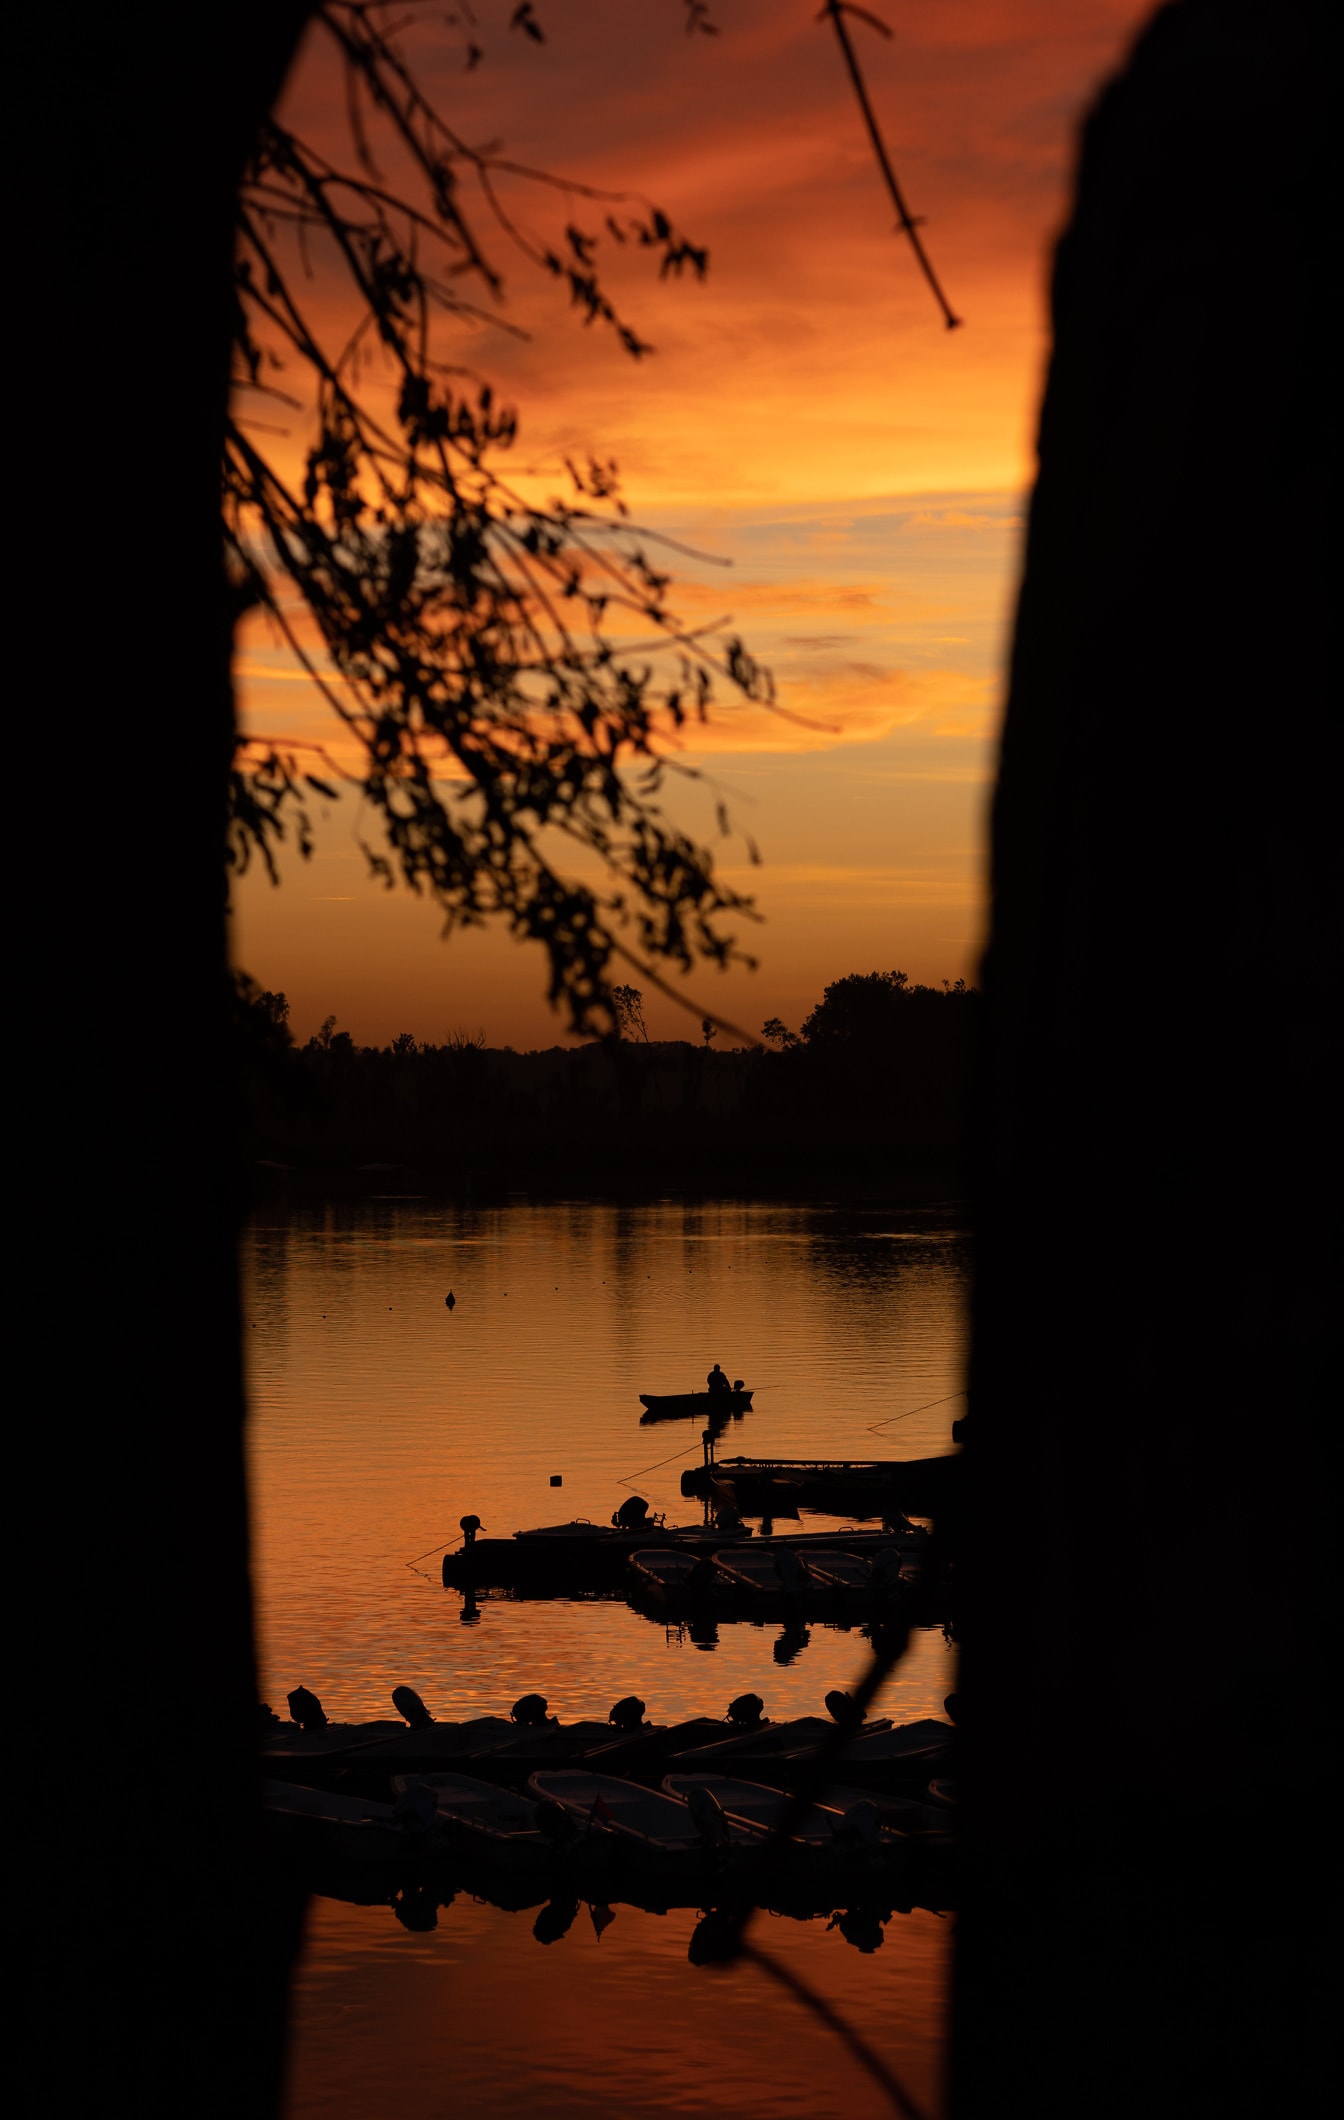 Sylwetka łodzi rybackiej w oddali w pomarańczowo-żółtym zachodzie słońca nad jeziorem